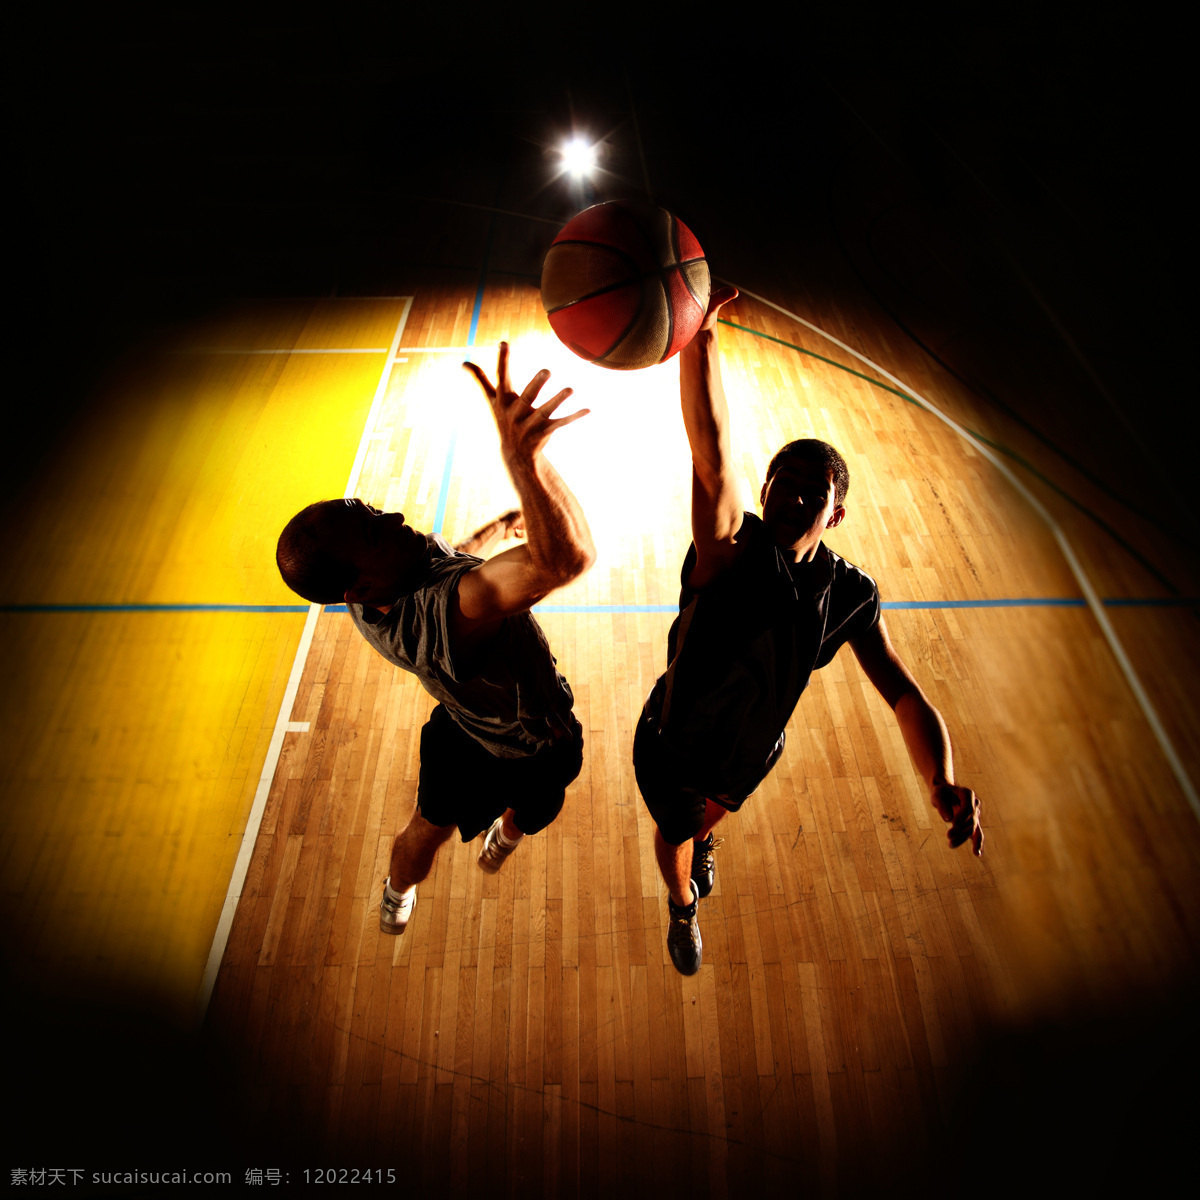 篮球 比赛 运动 篮球比赛 篮球运动员 体育运动员 体育运动 体育运动项目 生活百科